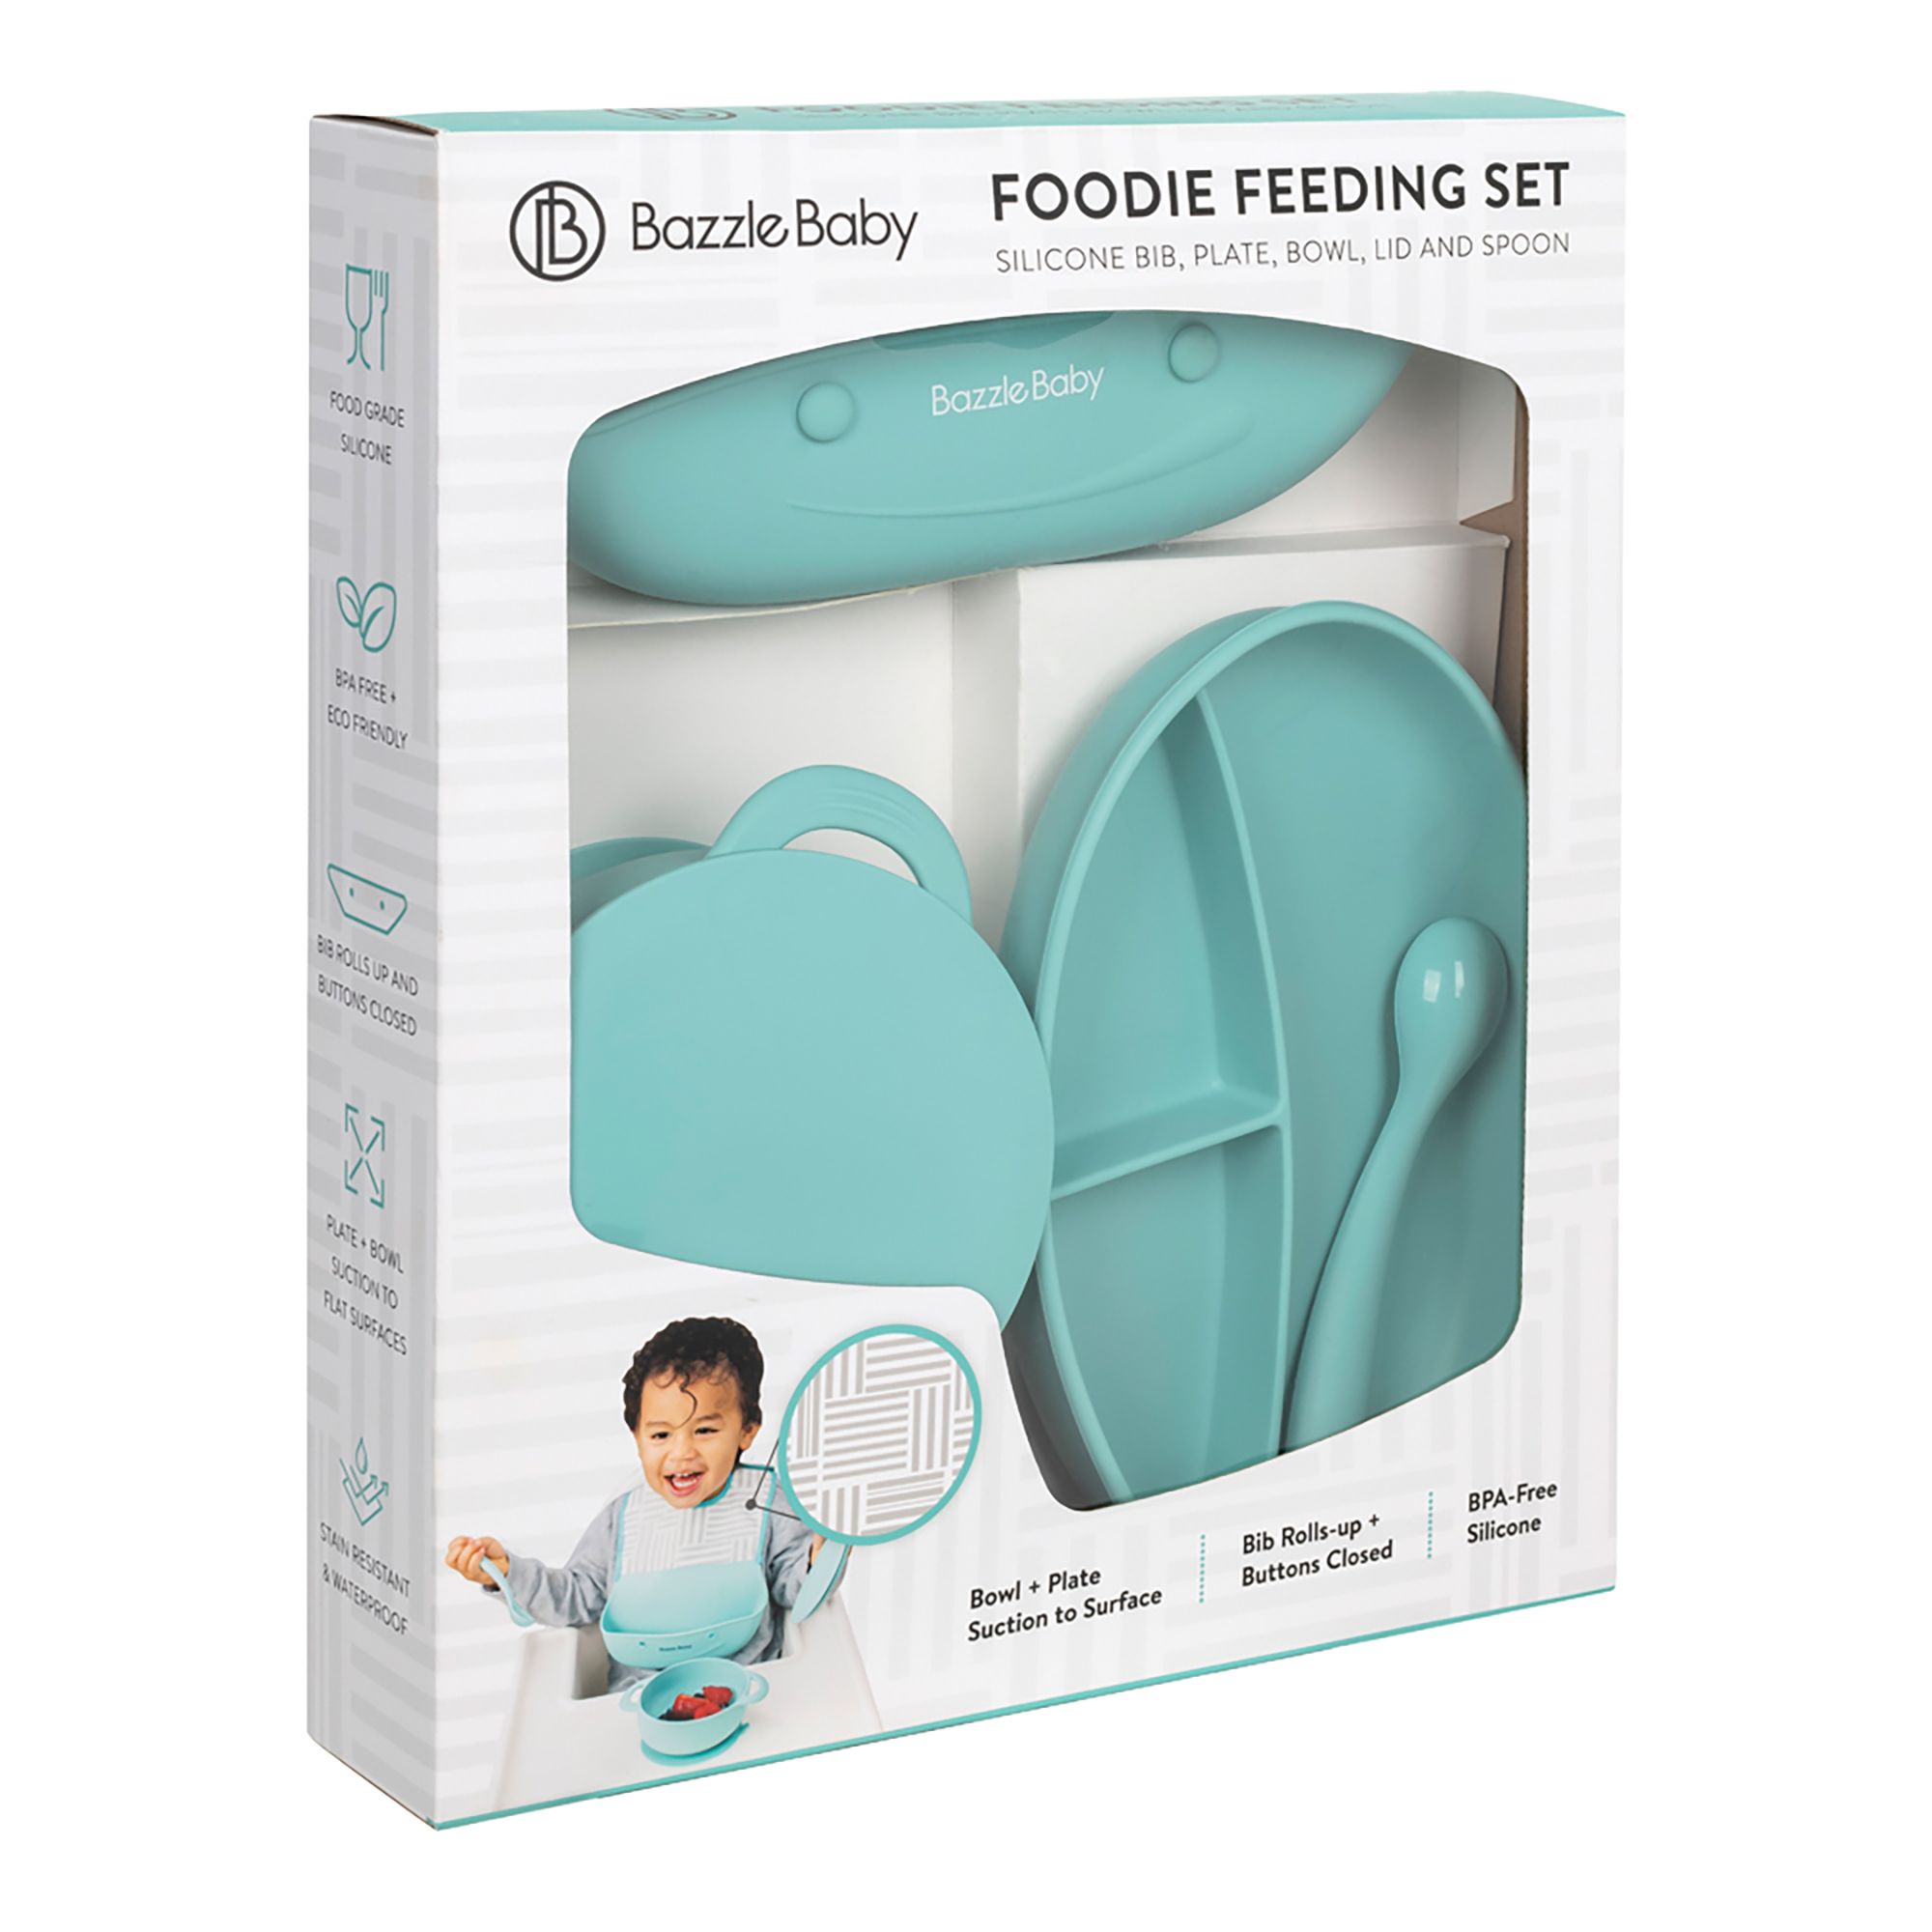 Baby Feeding Set,Silicone Bib Plates Bowls Spoons